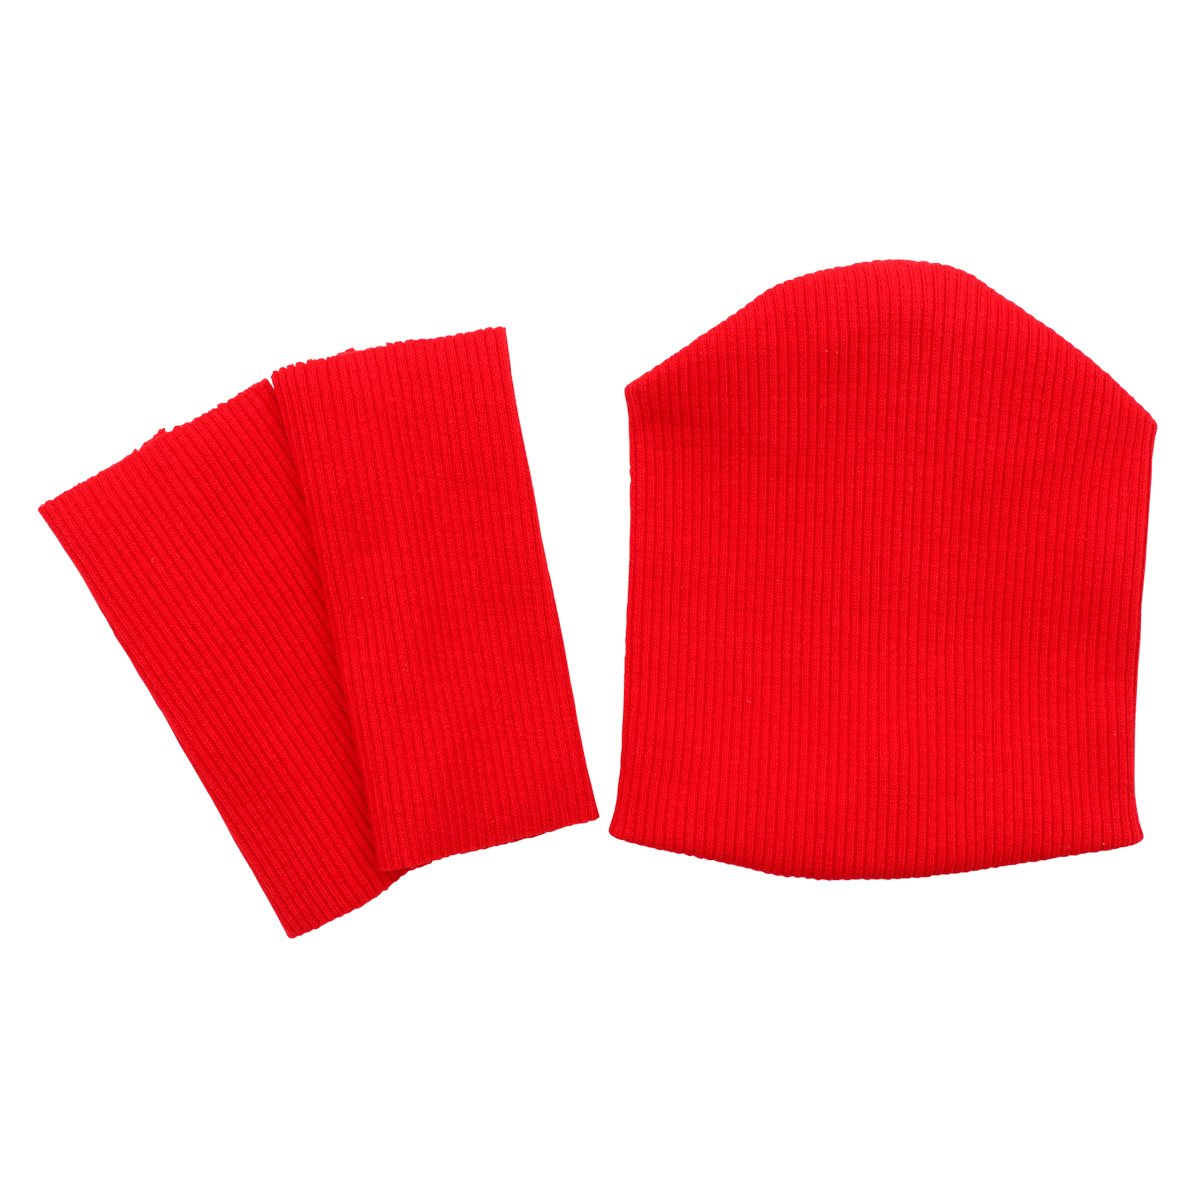 28875 Комплект одежды для игрушек красный: шапка (9,5*10 см), гетры (3*8 см) гетры puma team liga красный